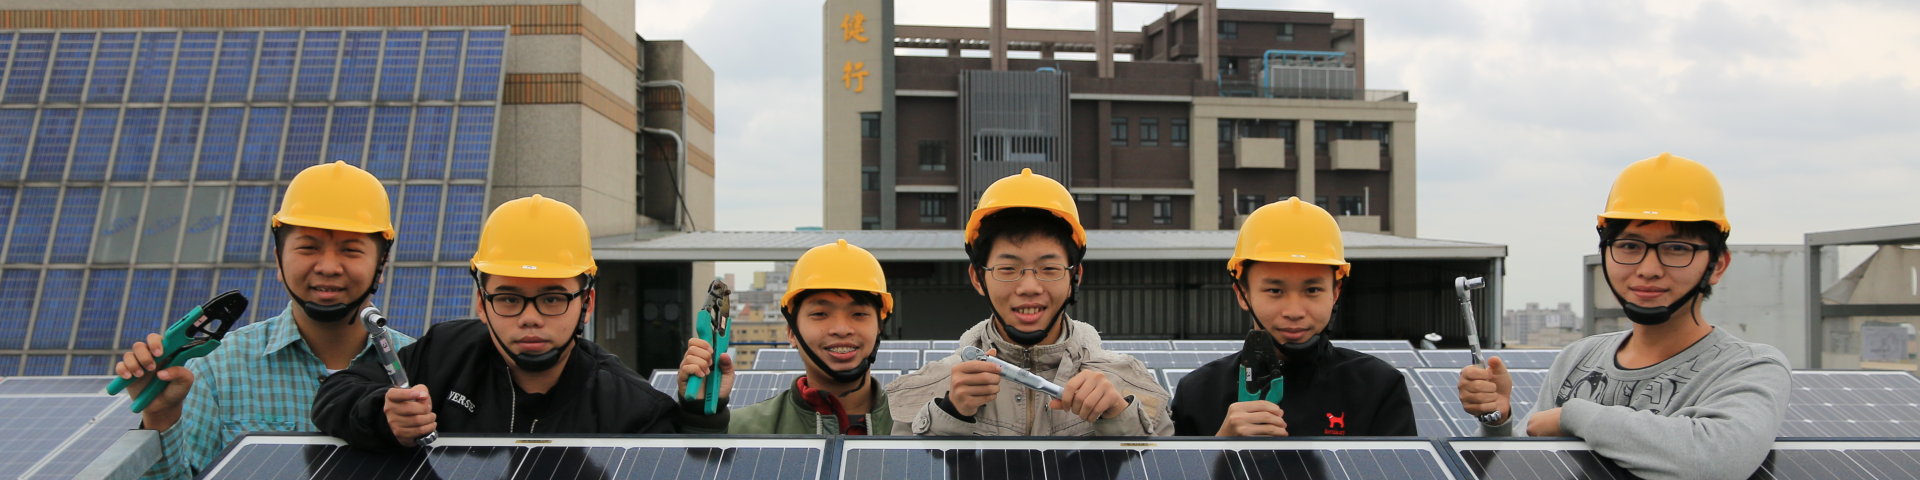 太阳光电设置乙级技术士技能检定场